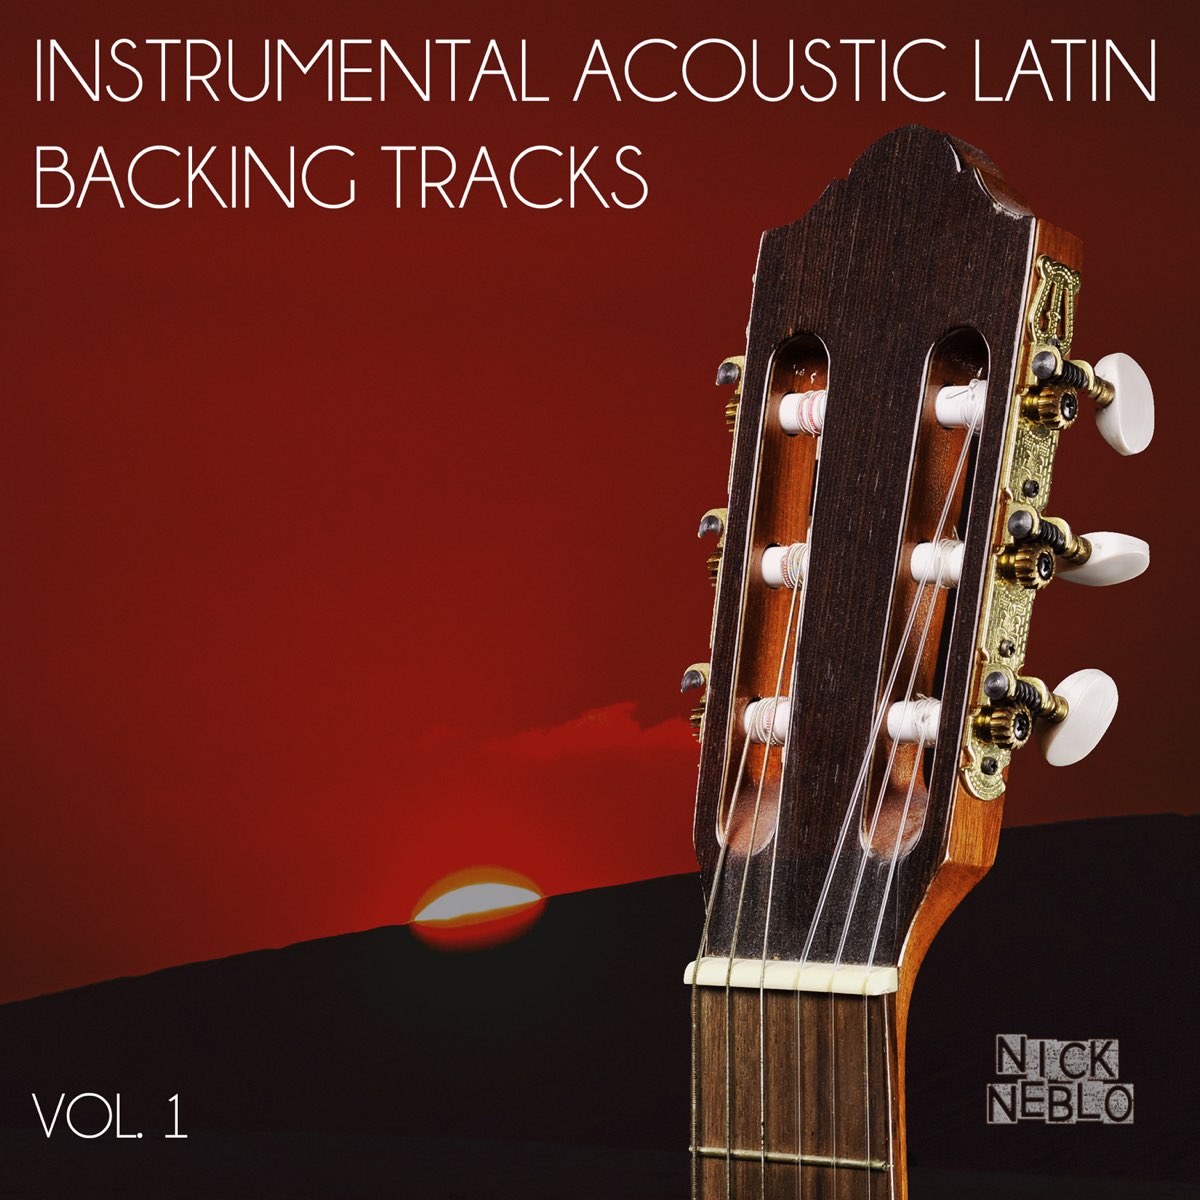 Гитара испанская обложка. Bossa Nova Guitar Classics. Acoustic Spanish Rumba Backing. Backing track am.